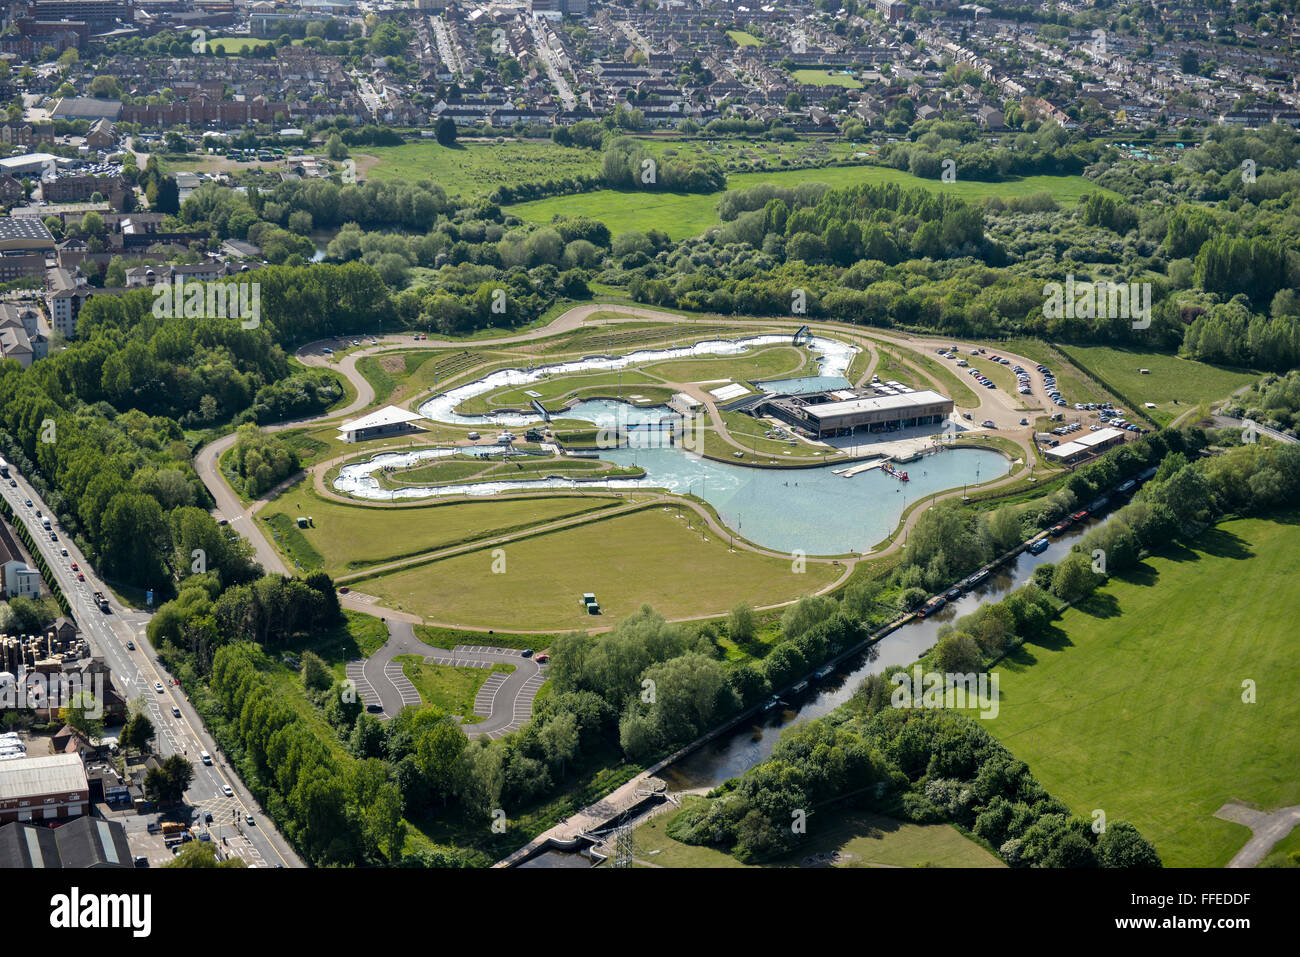 Una vista aérea del valle de Lee White Water Centre, construido para los Juegos Olímpicos de 2012 en Londres Foto de stock